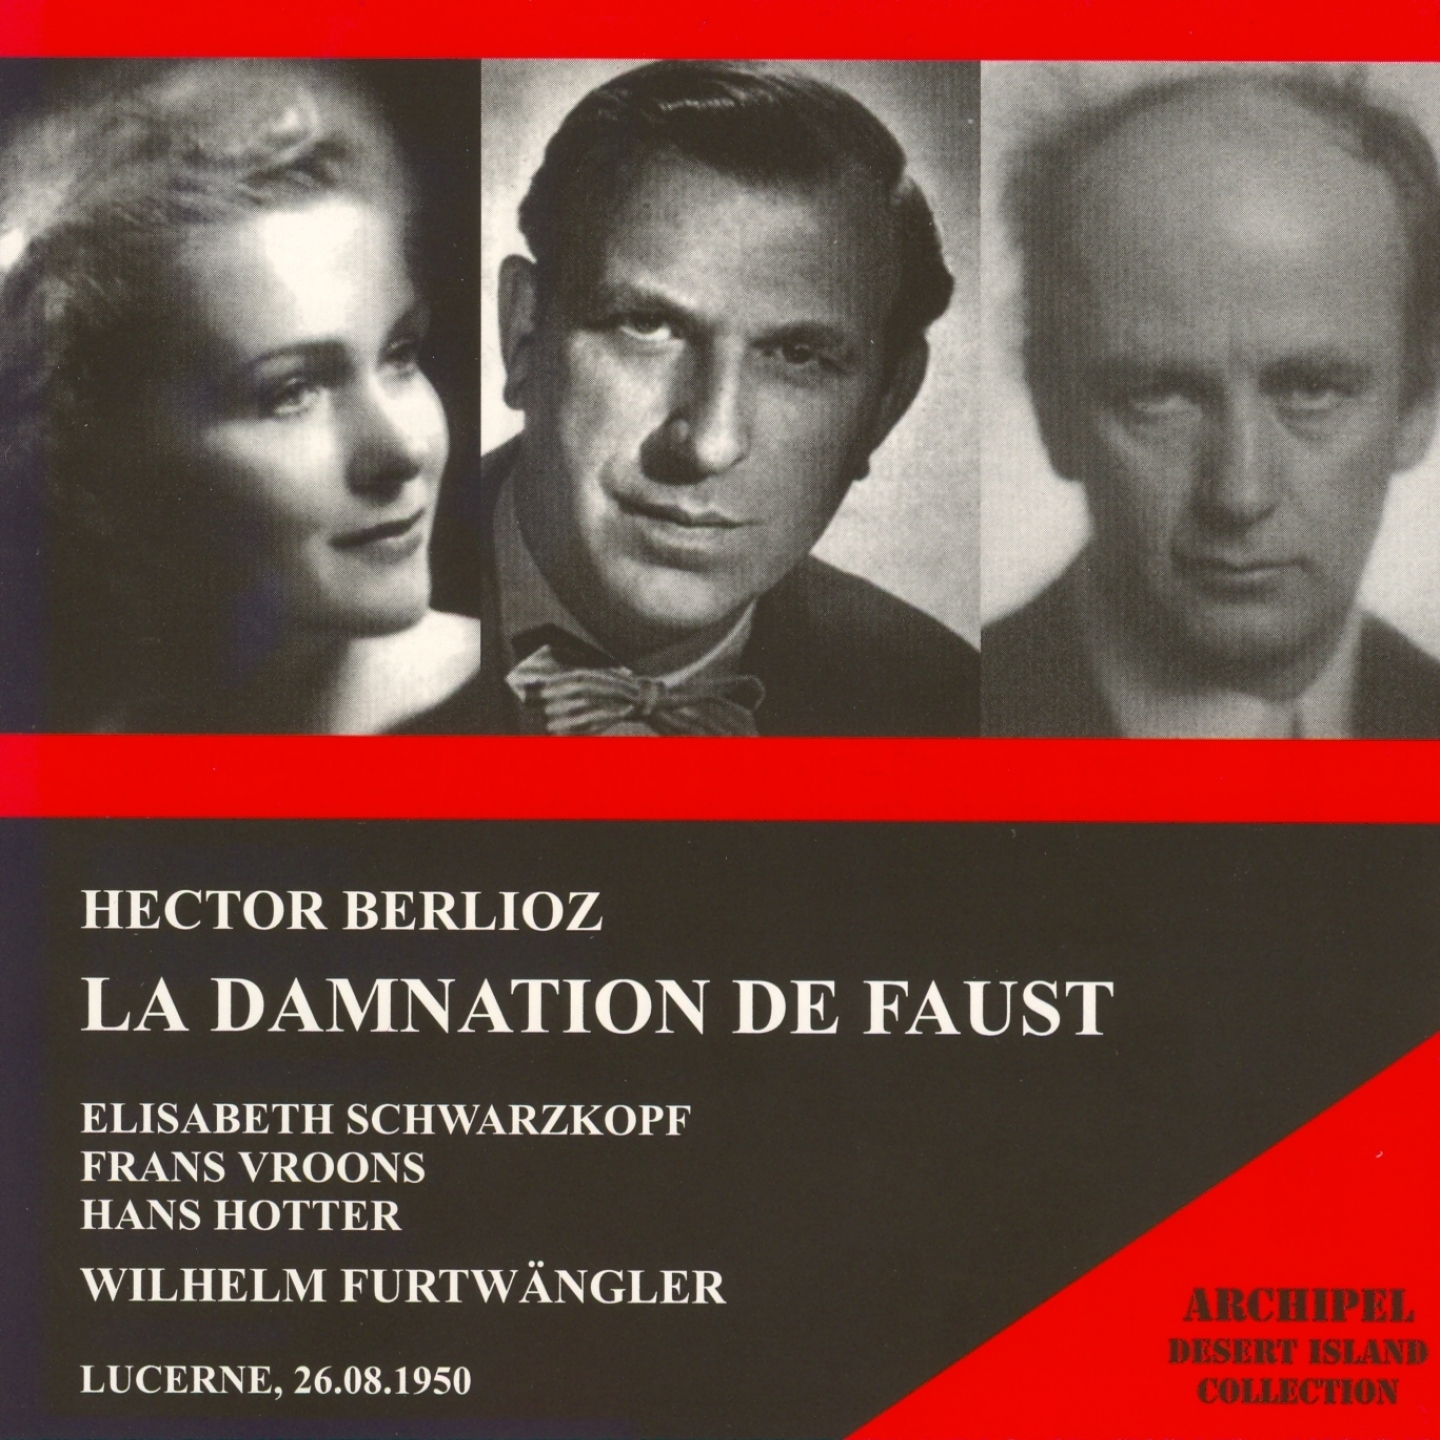 Berlioz: La damnation de Faust (Lucerne 26.08.1950)